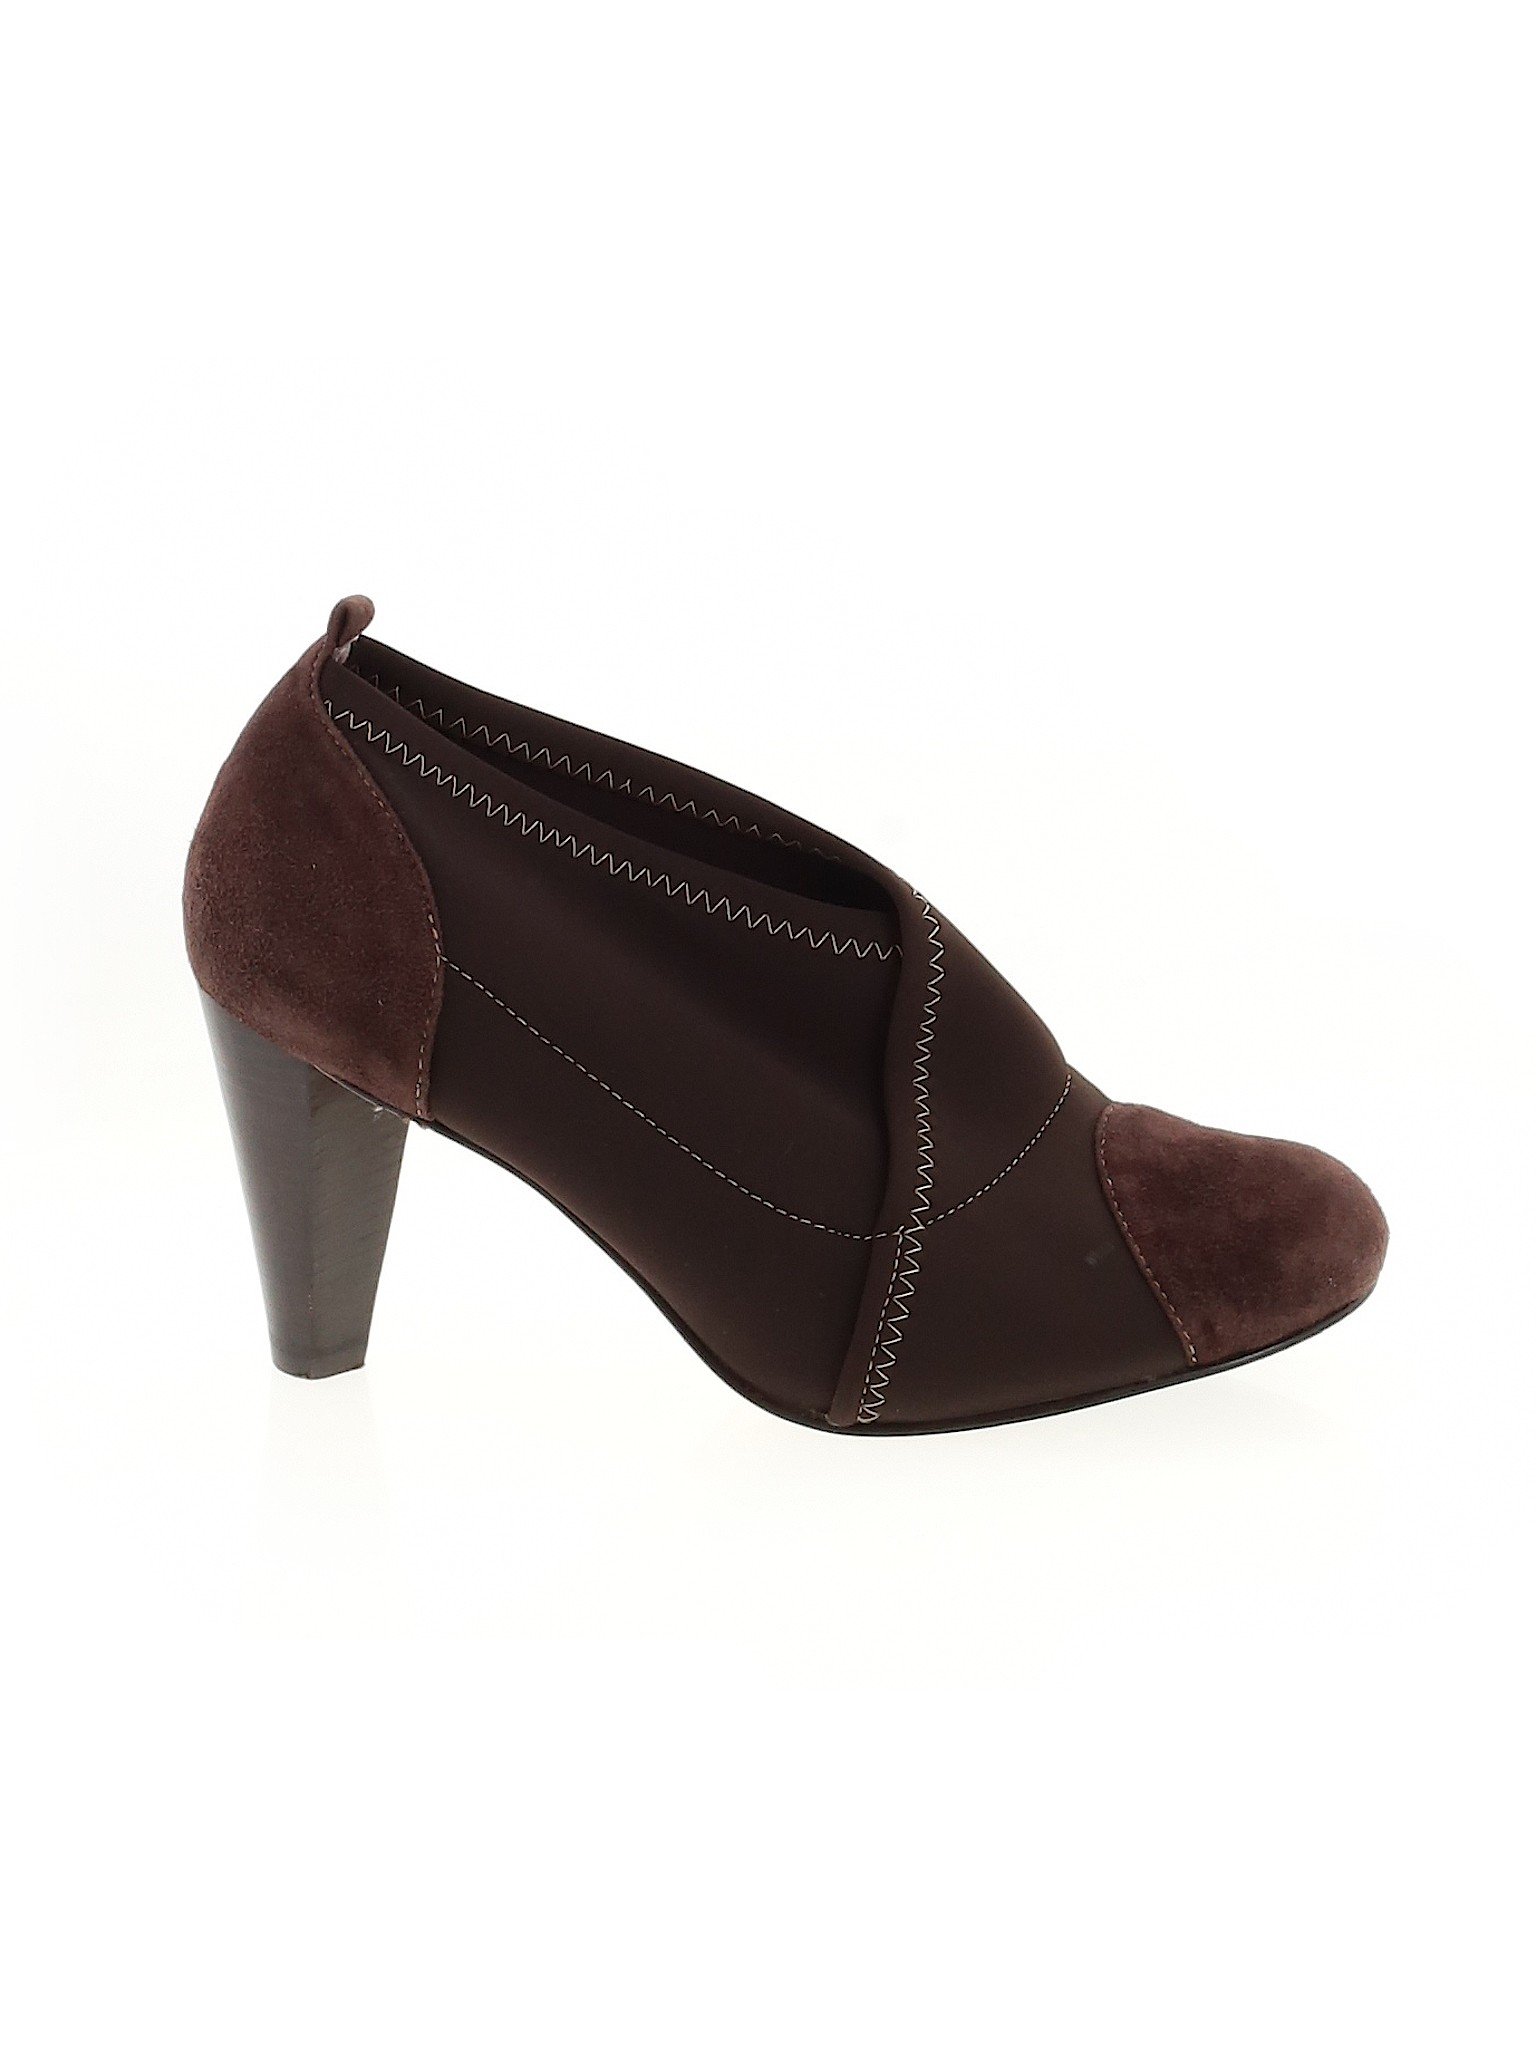 Taryn by Taryn Rose Women Brown Ankle Boots US 8 | eBay